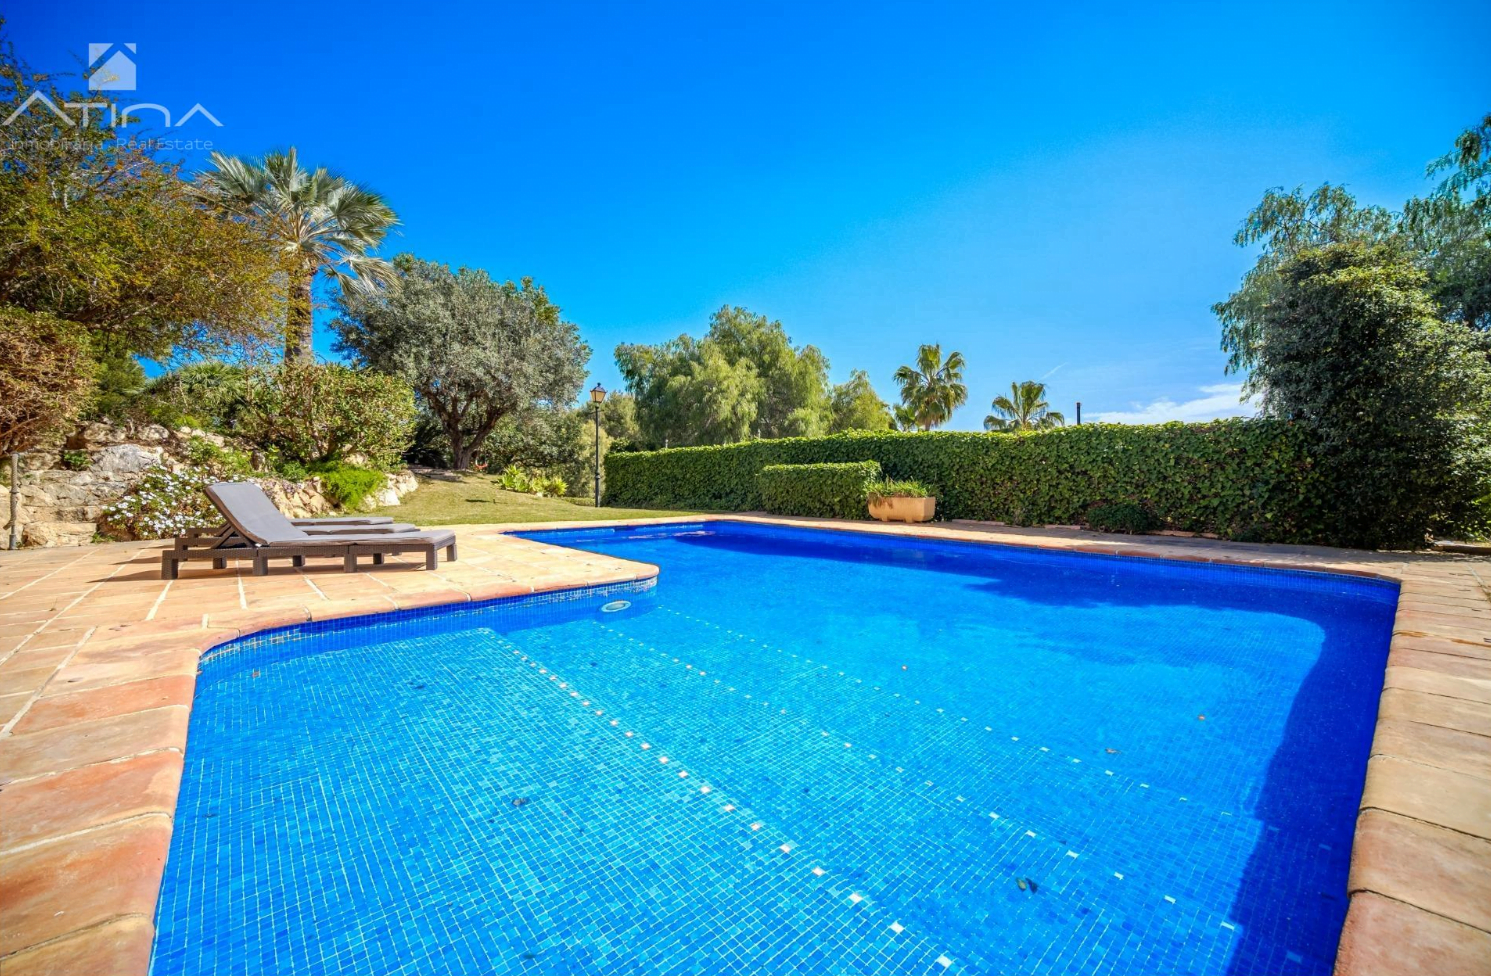 Gran piscina privada con terraza para relajarse en sus tumbonas